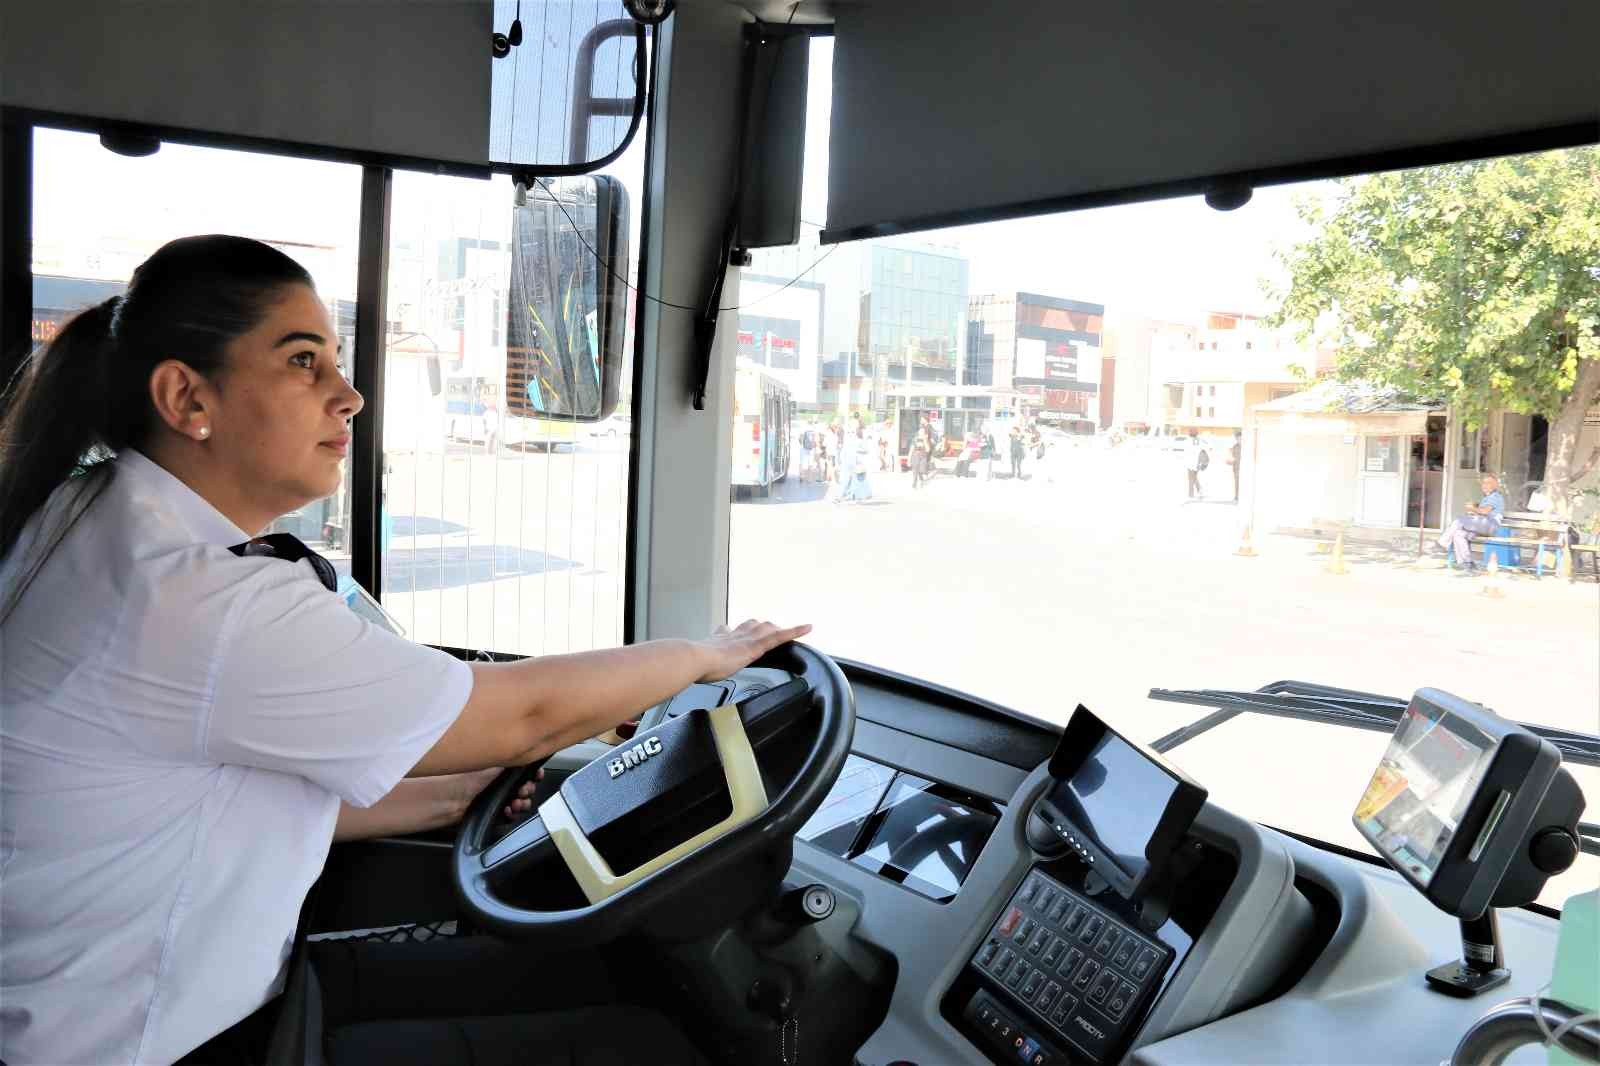 Antalya’da toplu taşımada 9 bin TL’ye günde 8 saat çalışacak kadın şoför aranıyor